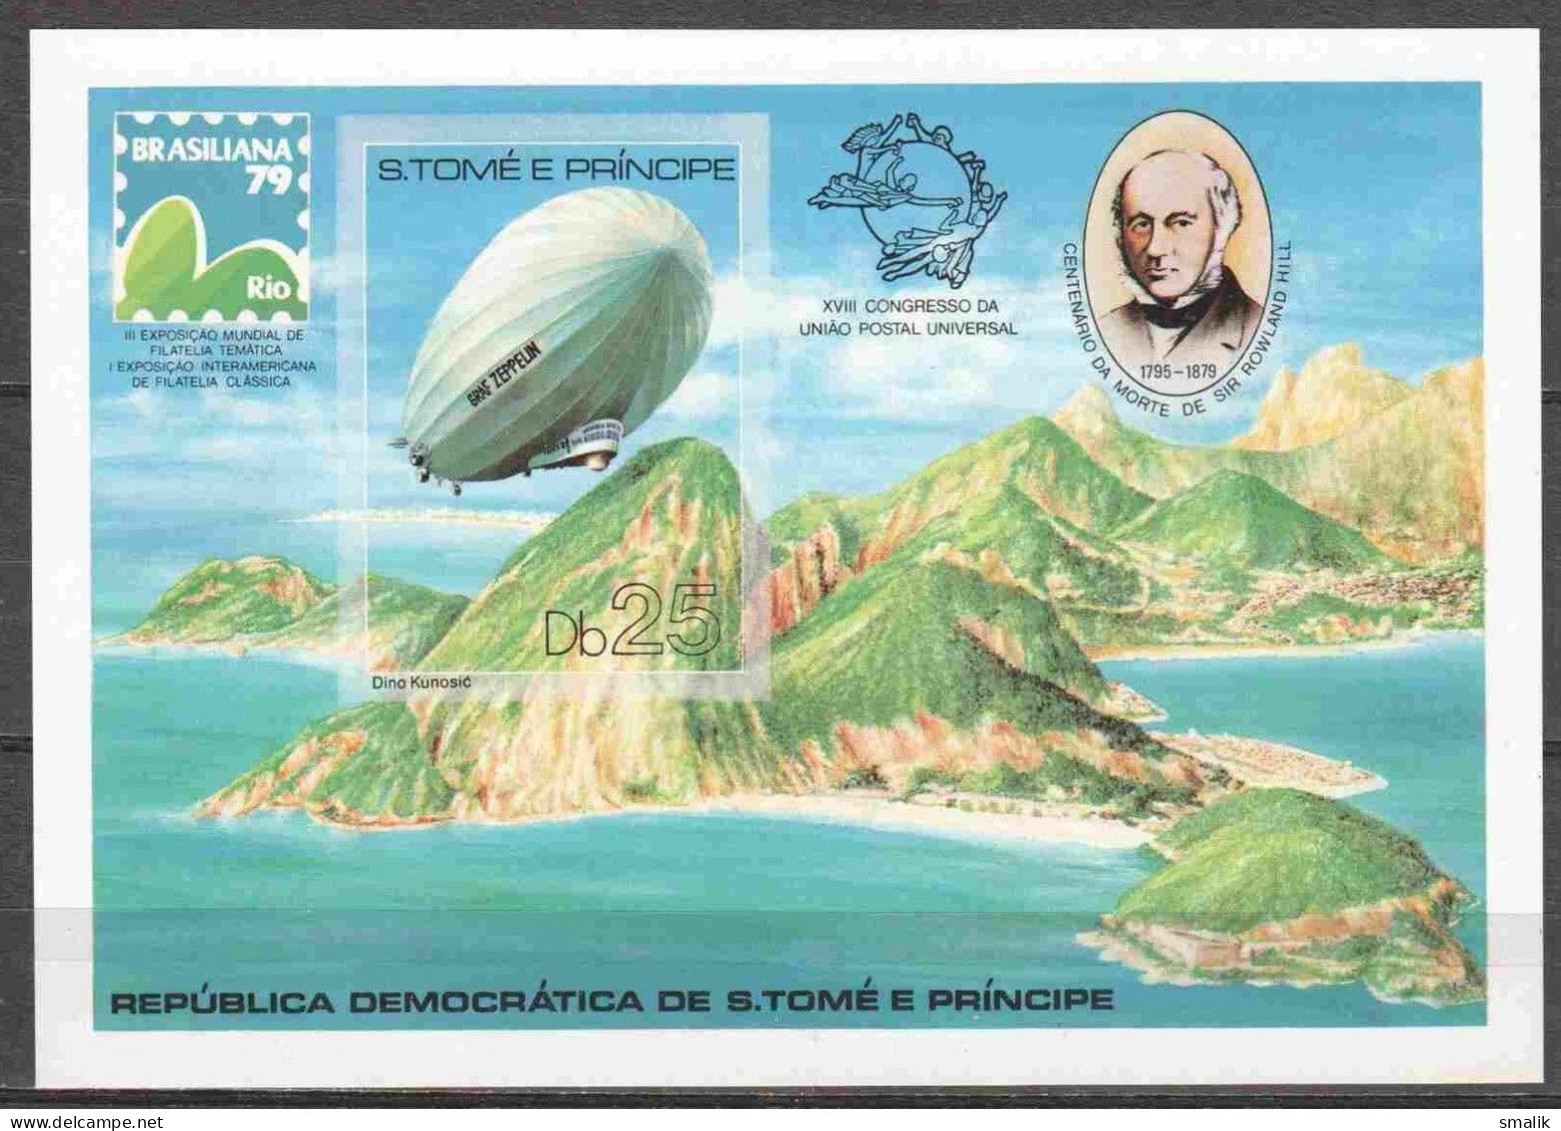 S. TOME E PRINCIPE SAO 1979 - Rowland Hill UPU, Depicting Graf Zeppelin Braziliana'79, IMPERF Miniature Sheet, MNH - Sao Tomé Y Príncipe